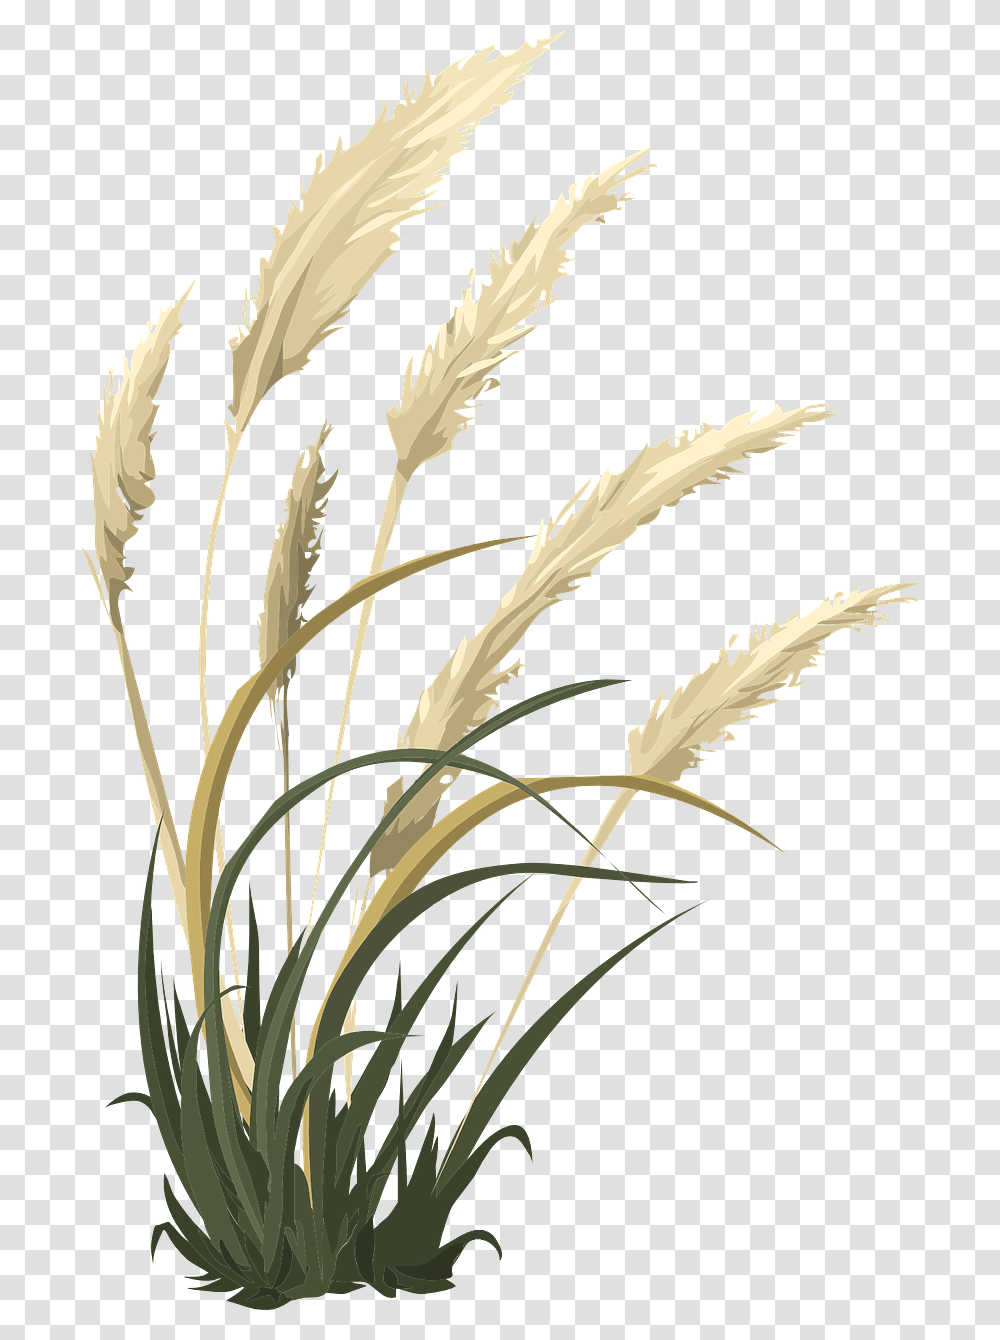 Pampas, Grass, Plant, Lawn, Flower Transparent Png